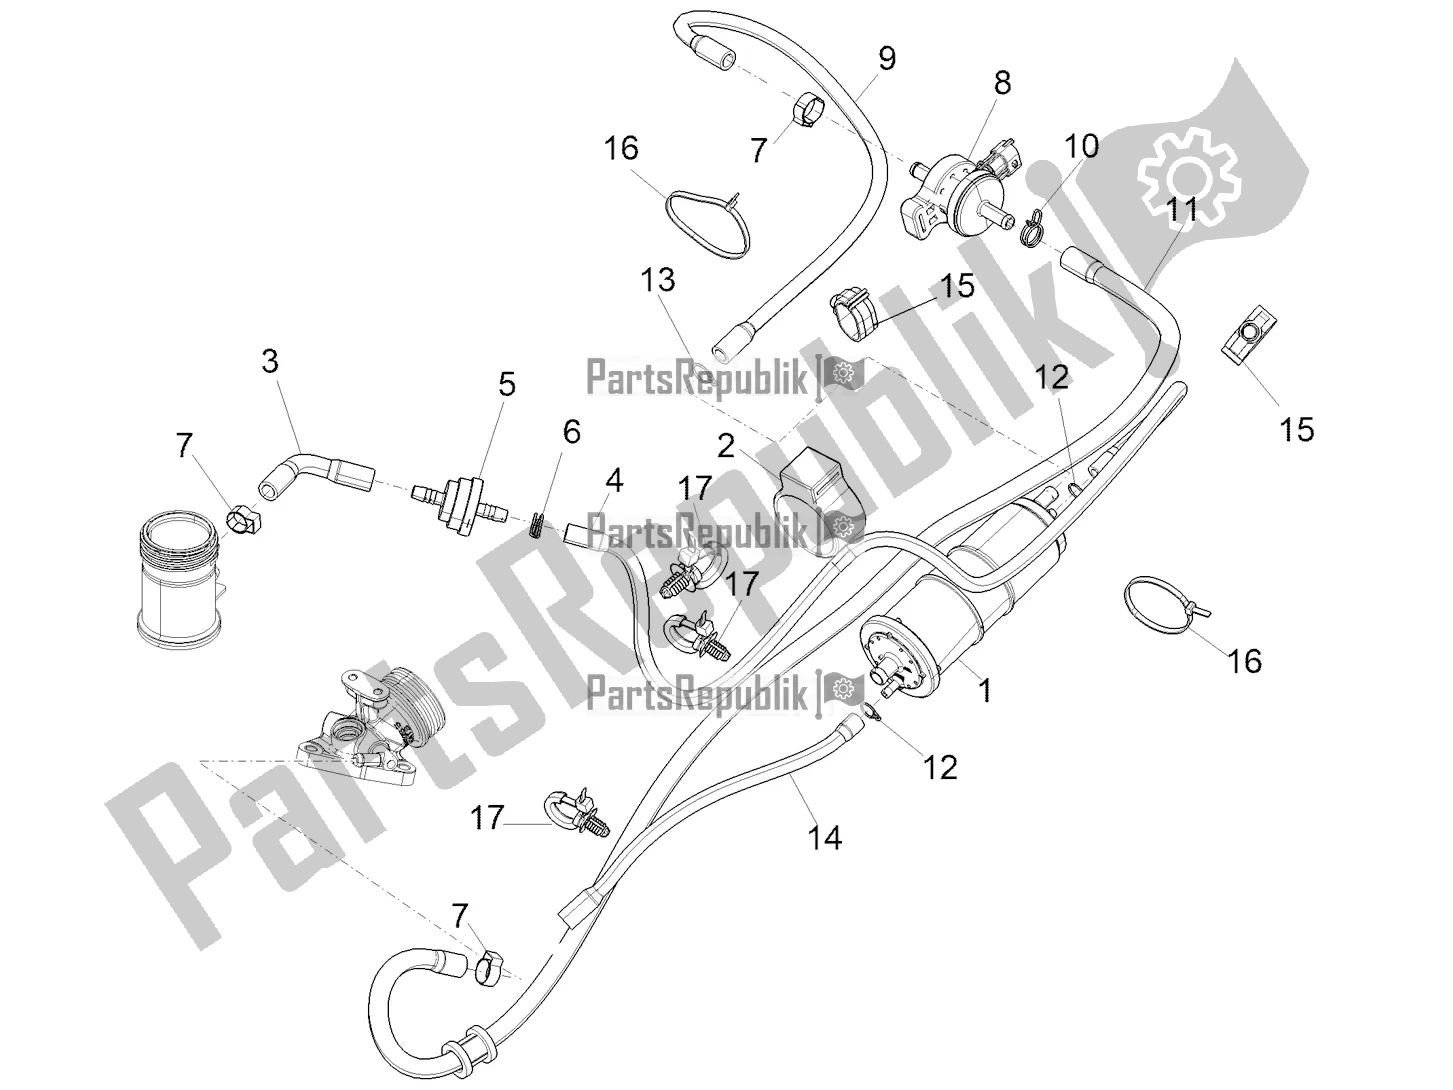 Alle onderdelen voor de Anti-percolatiesysteem van de Piaggio Medley 125 ABS 2022